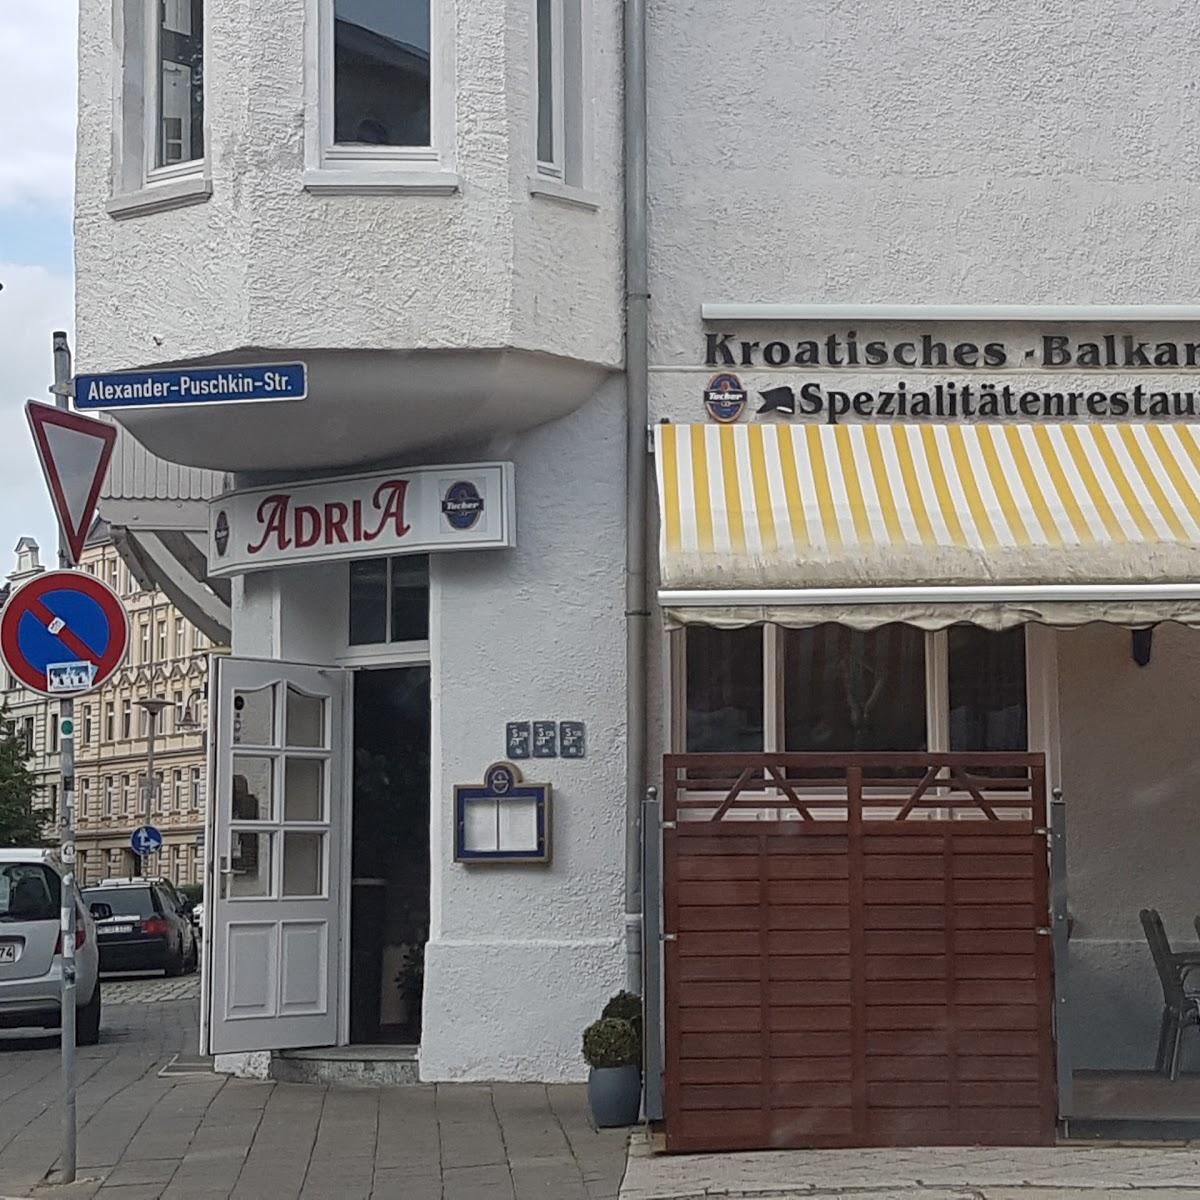 Restaurant "Adria" in  Magdeburg